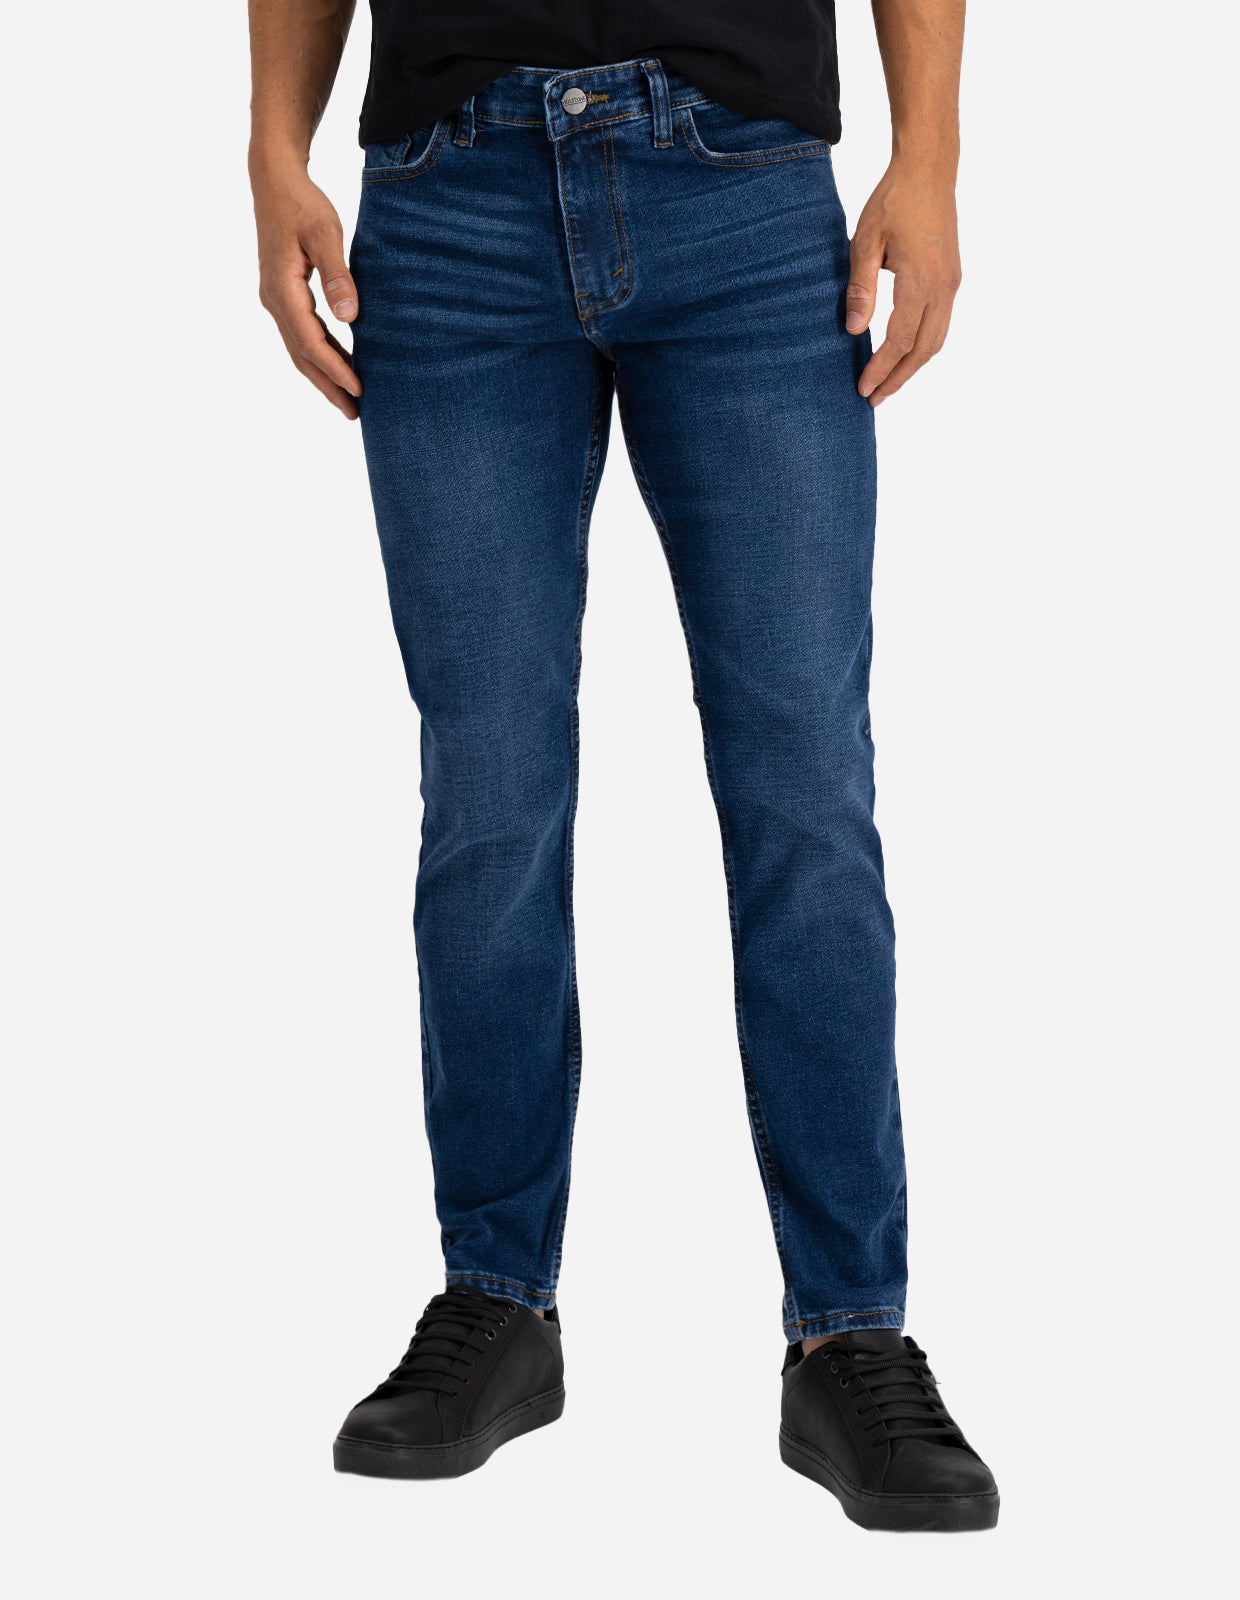 Jeans de Mezclilla Premium Slim Fit - Dallas